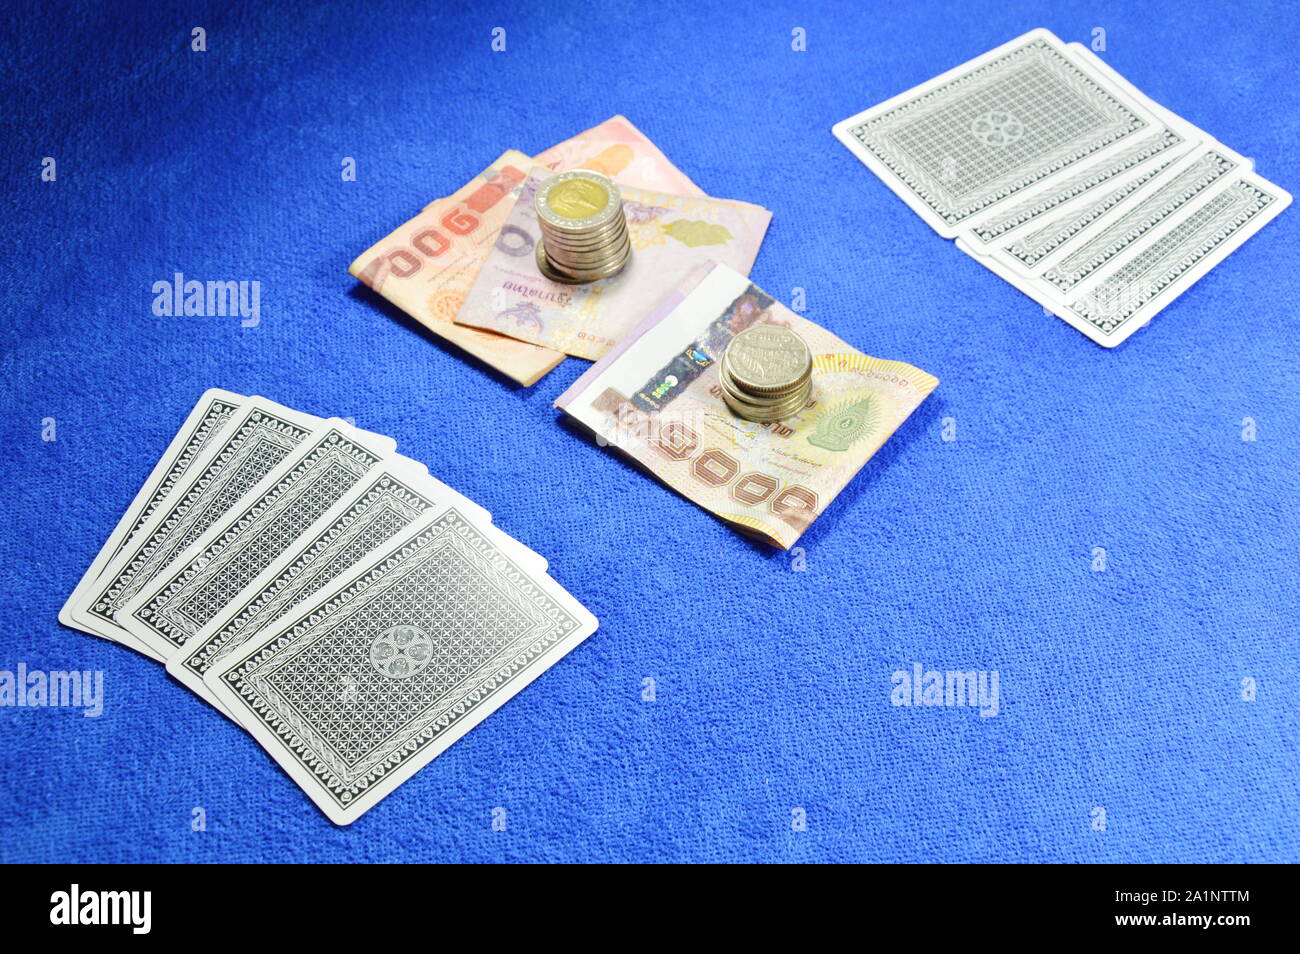 poker card fold and money bet on blue velvet table waiting for challenge Stock Photo